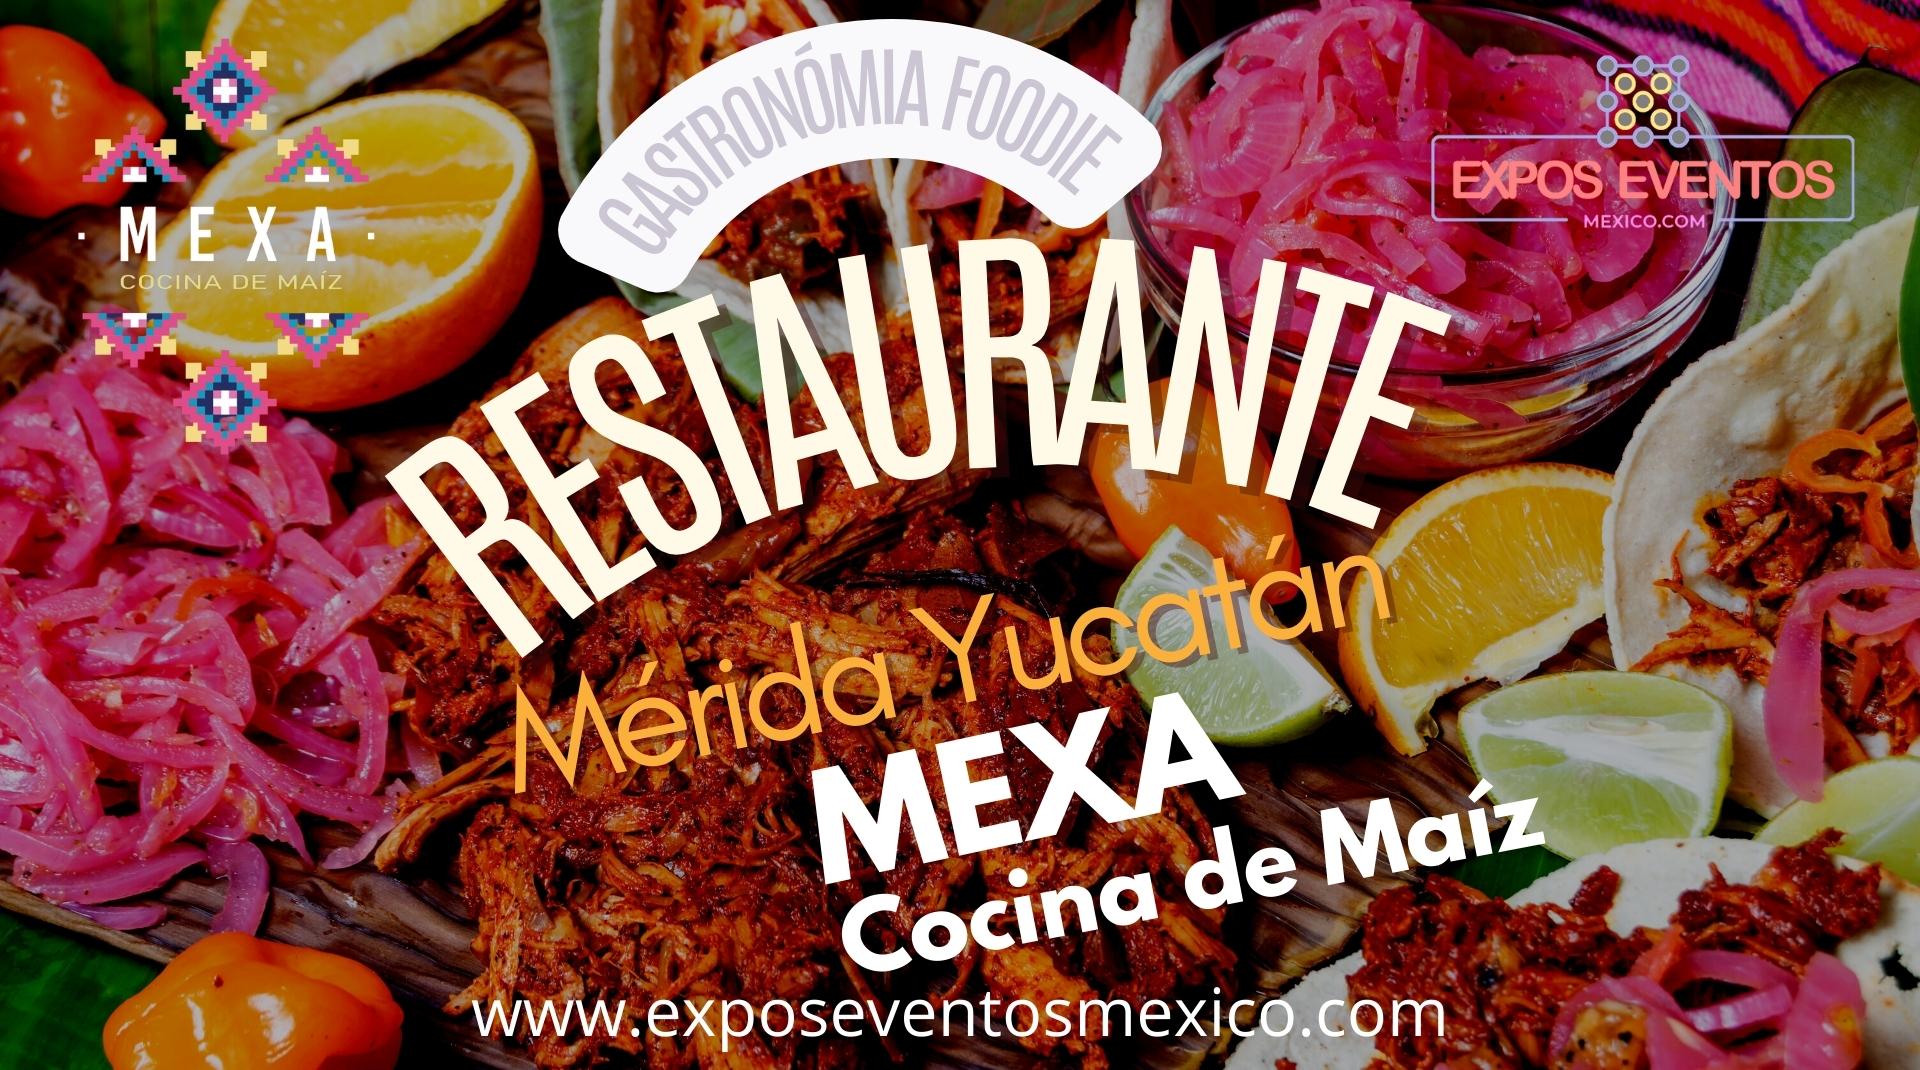 Mercado 60 Mérida Yucatán. Restaurante MEXA Cocina de Maíz Mérida Yucatán